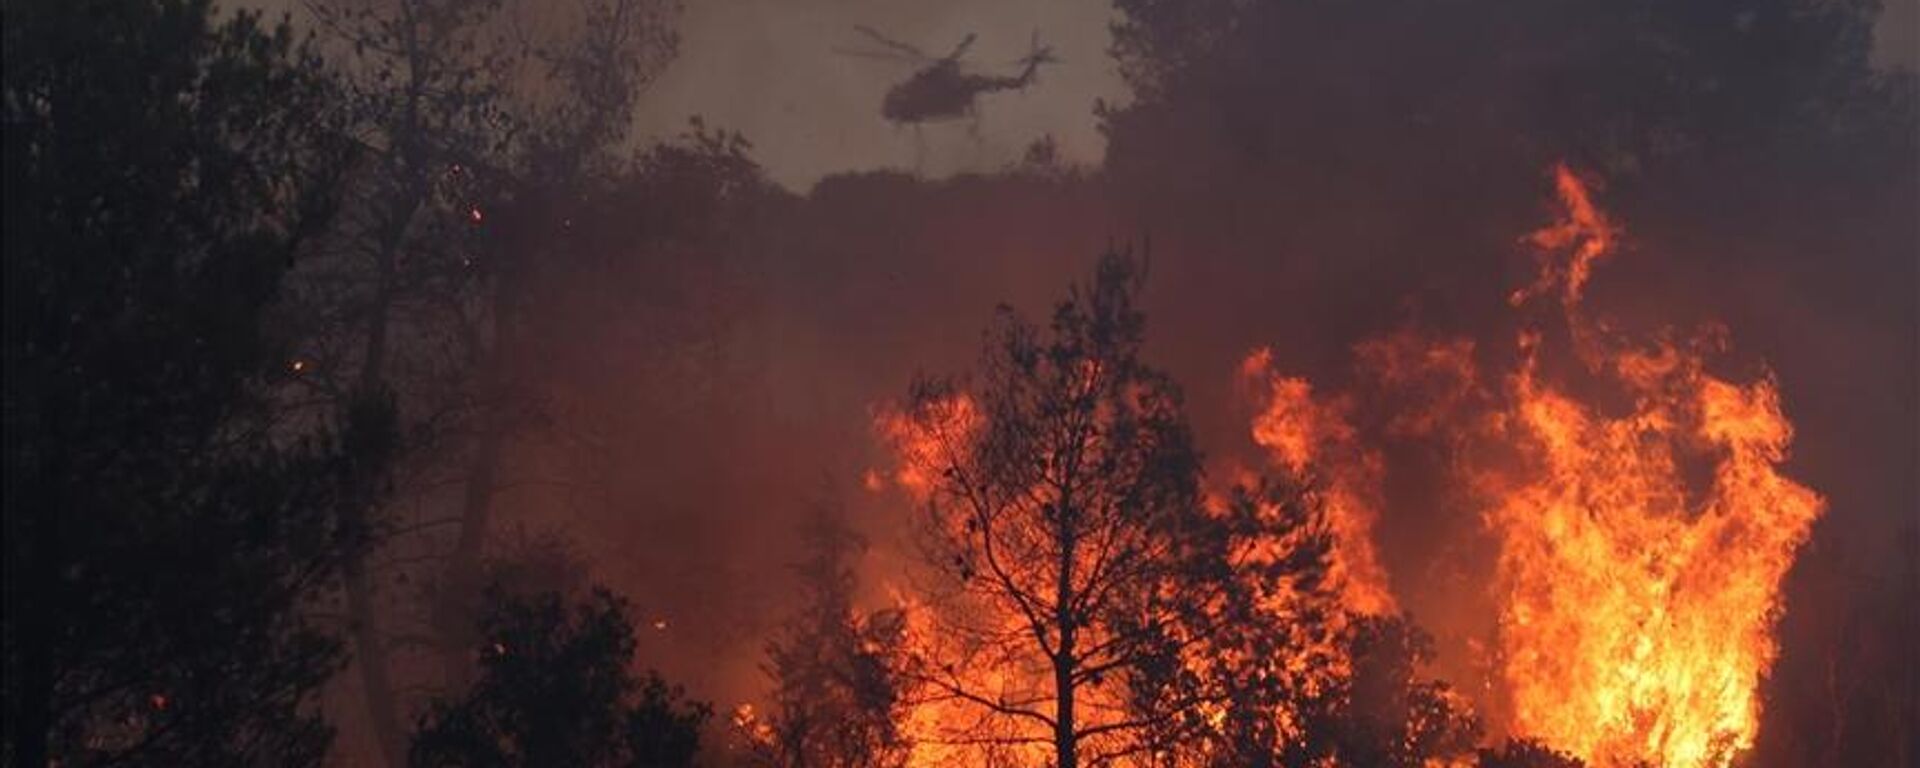 Rodos Adası'nda bir hafta önce başlayan orman yangını kontrolsüz şekilde yayılmaya devam ederken, Yunanistan'ın Korfu Adası'nda da orman yangını çıktığı bildirildi. - Sputnik Türkiye, 1920, 26.07.2023